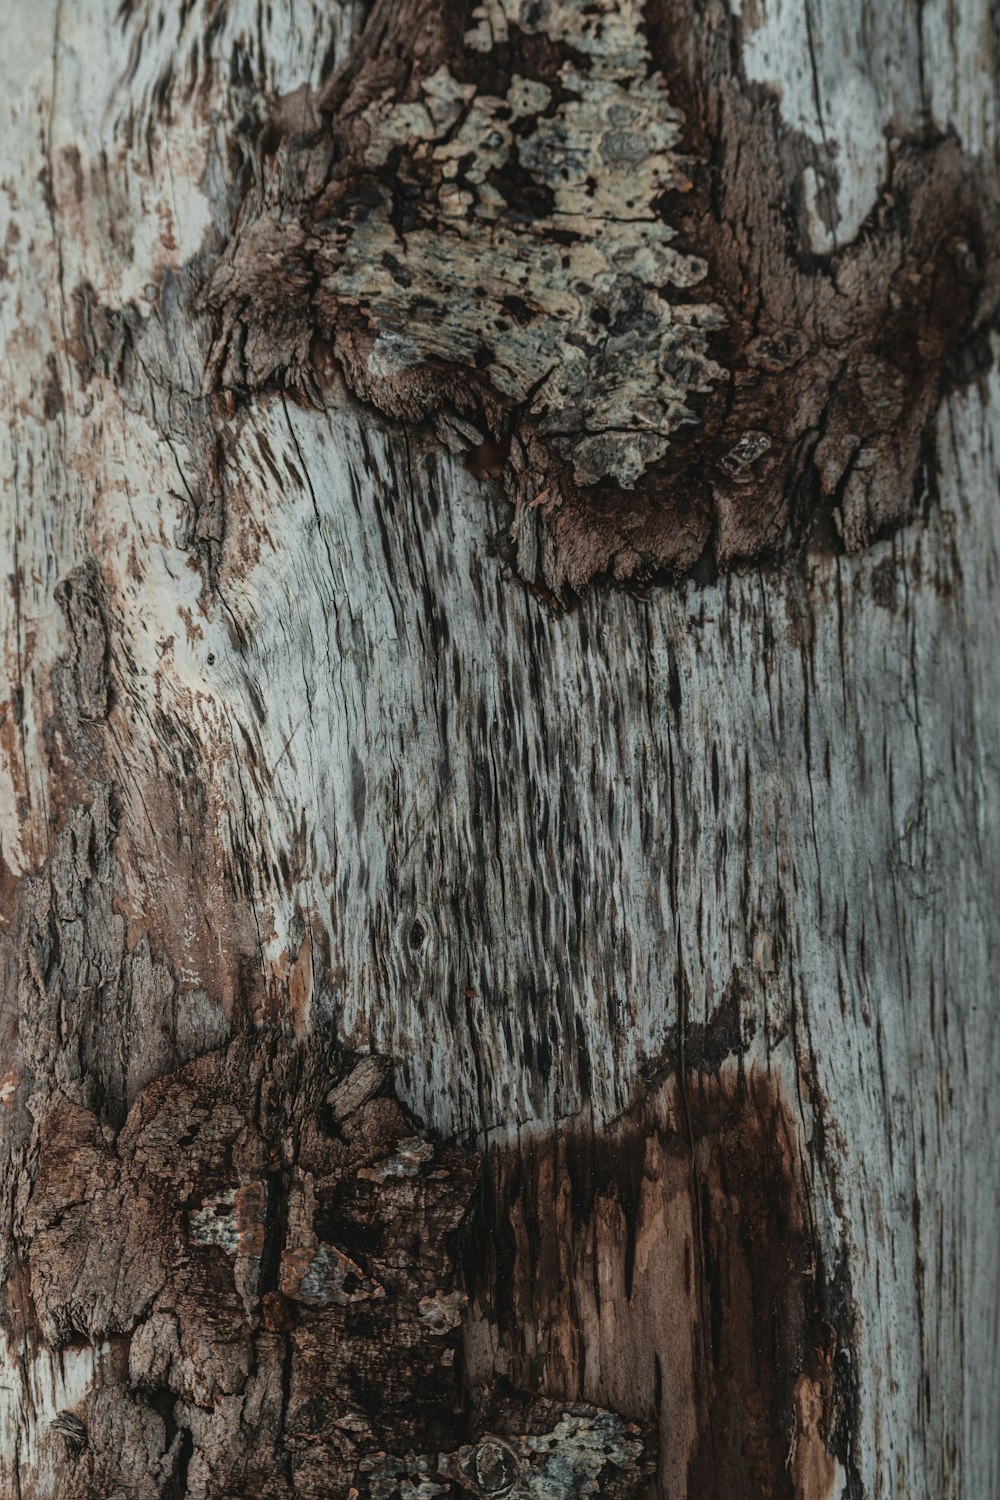 a close-up of a tree bark